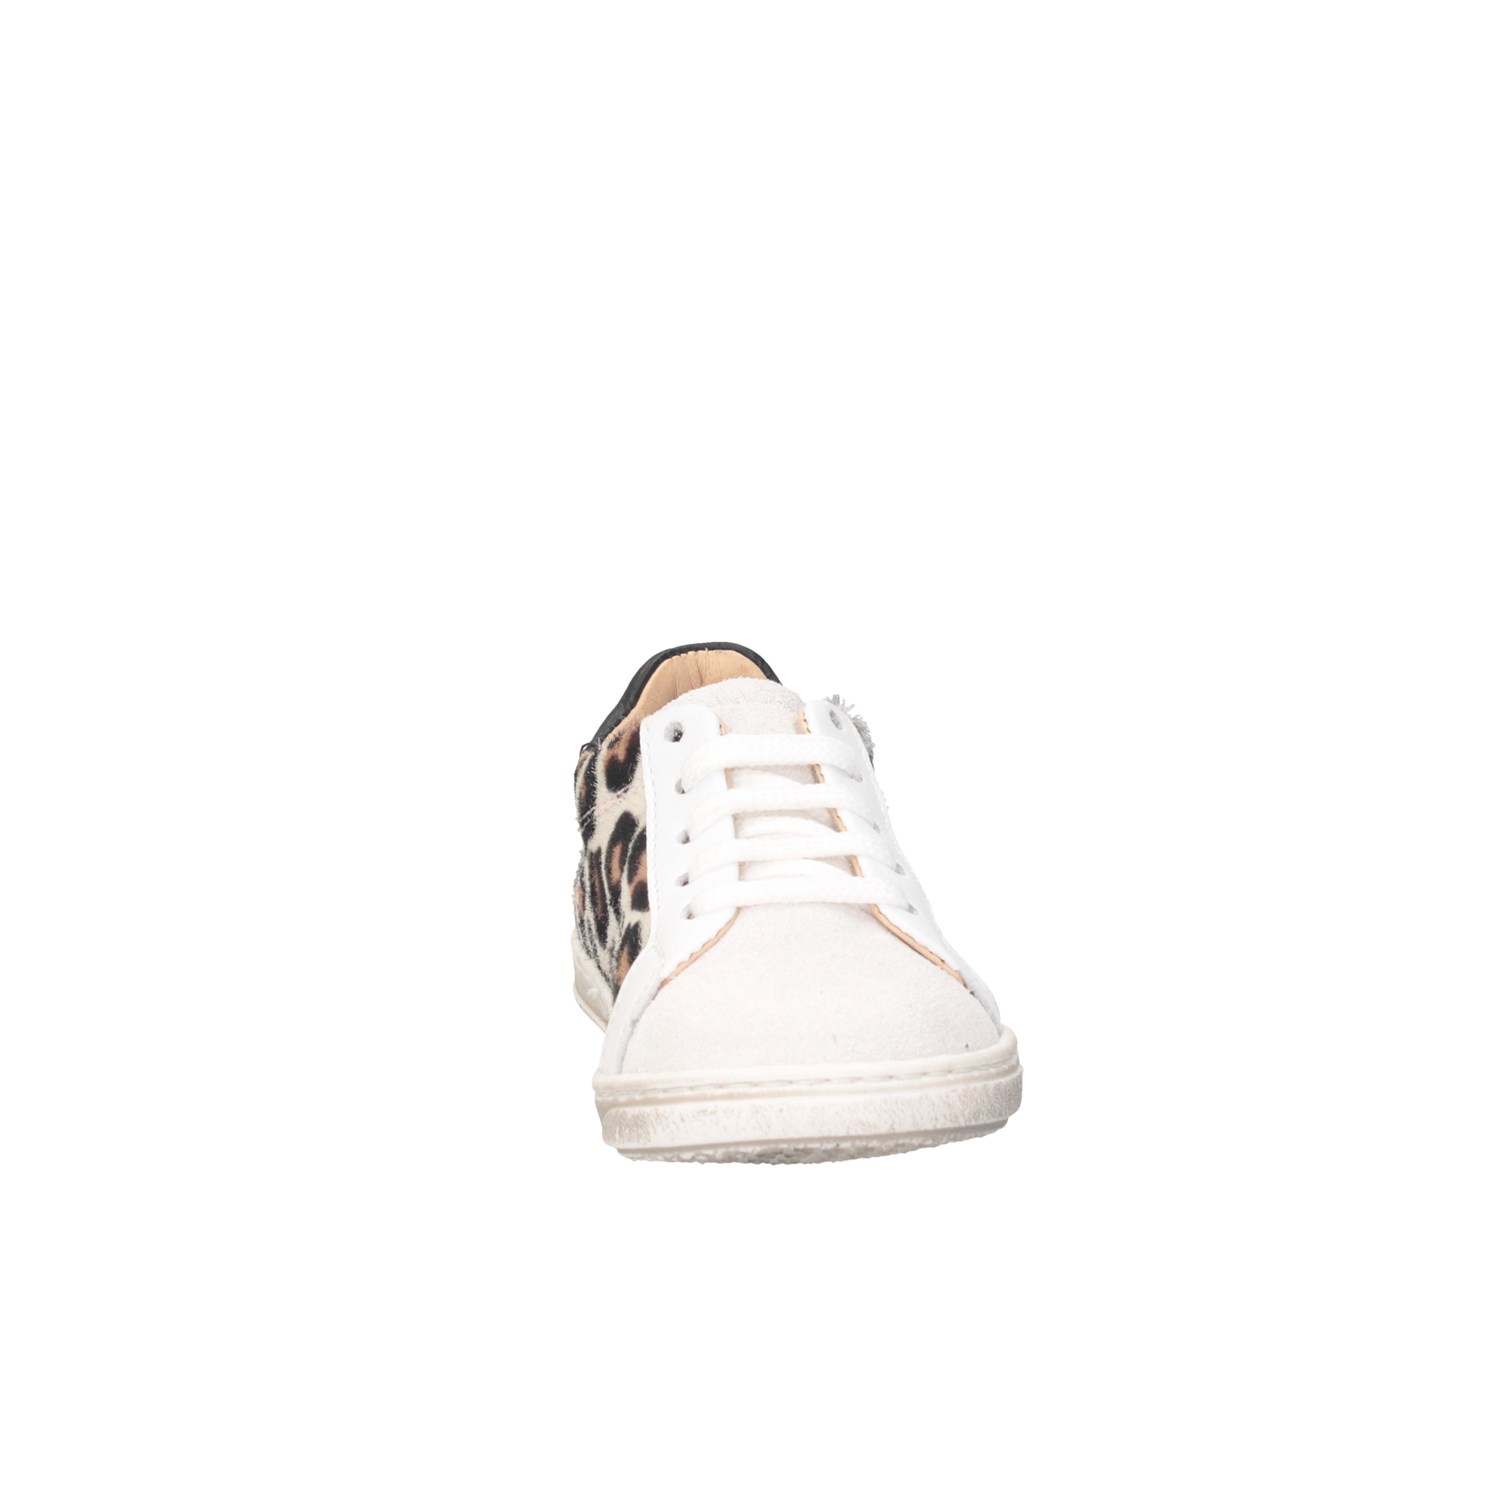 Gioiecologiche 5102 White / Leopard Shoes Child 